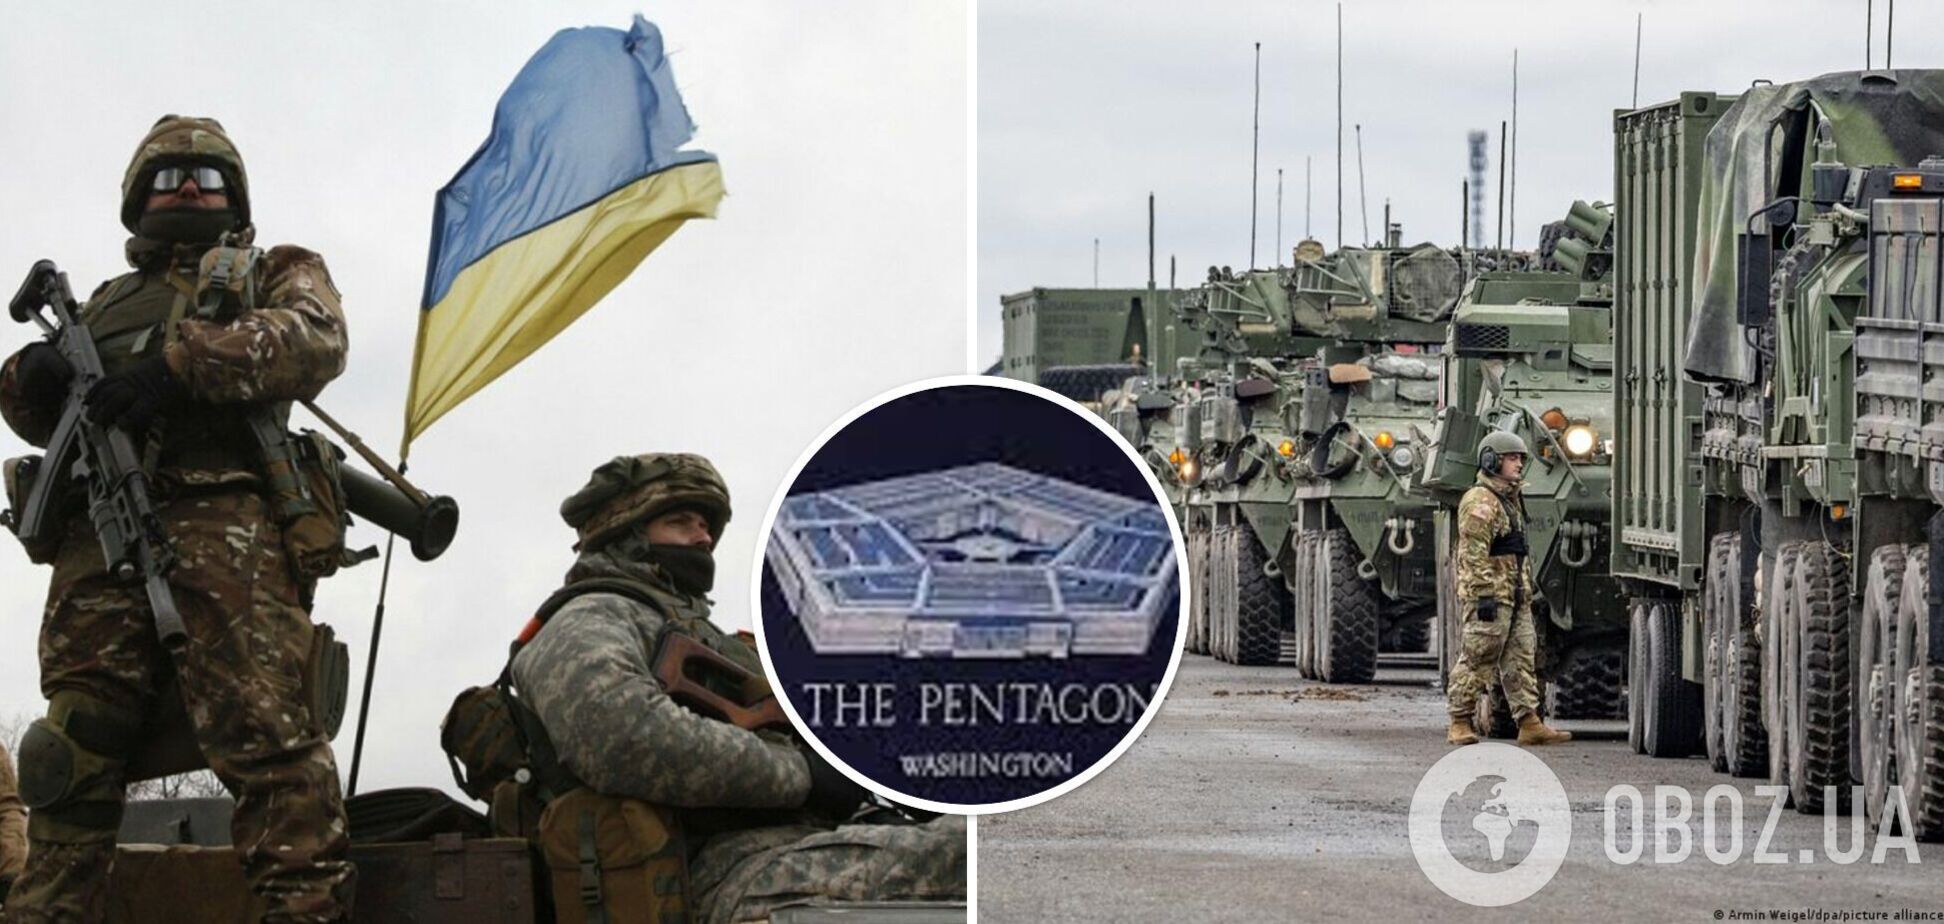 Пентагон: нет никаких доказательств ненадлежащего использования Украиной американского оружия